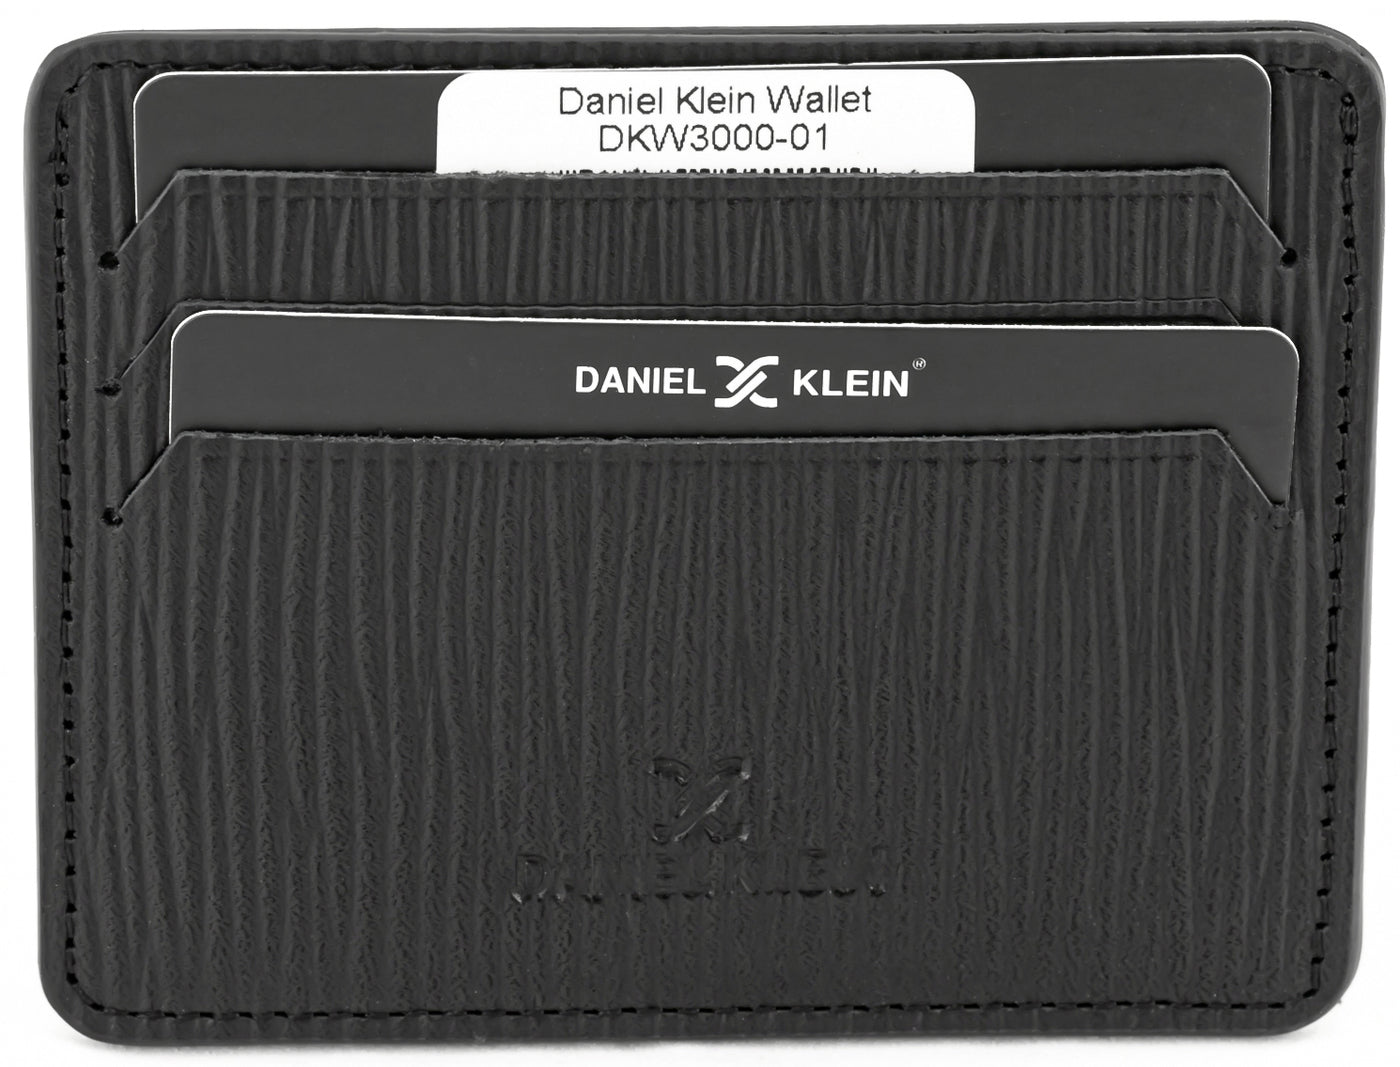 DANIEL KLEIN DKW3000-01 MEN WALLET